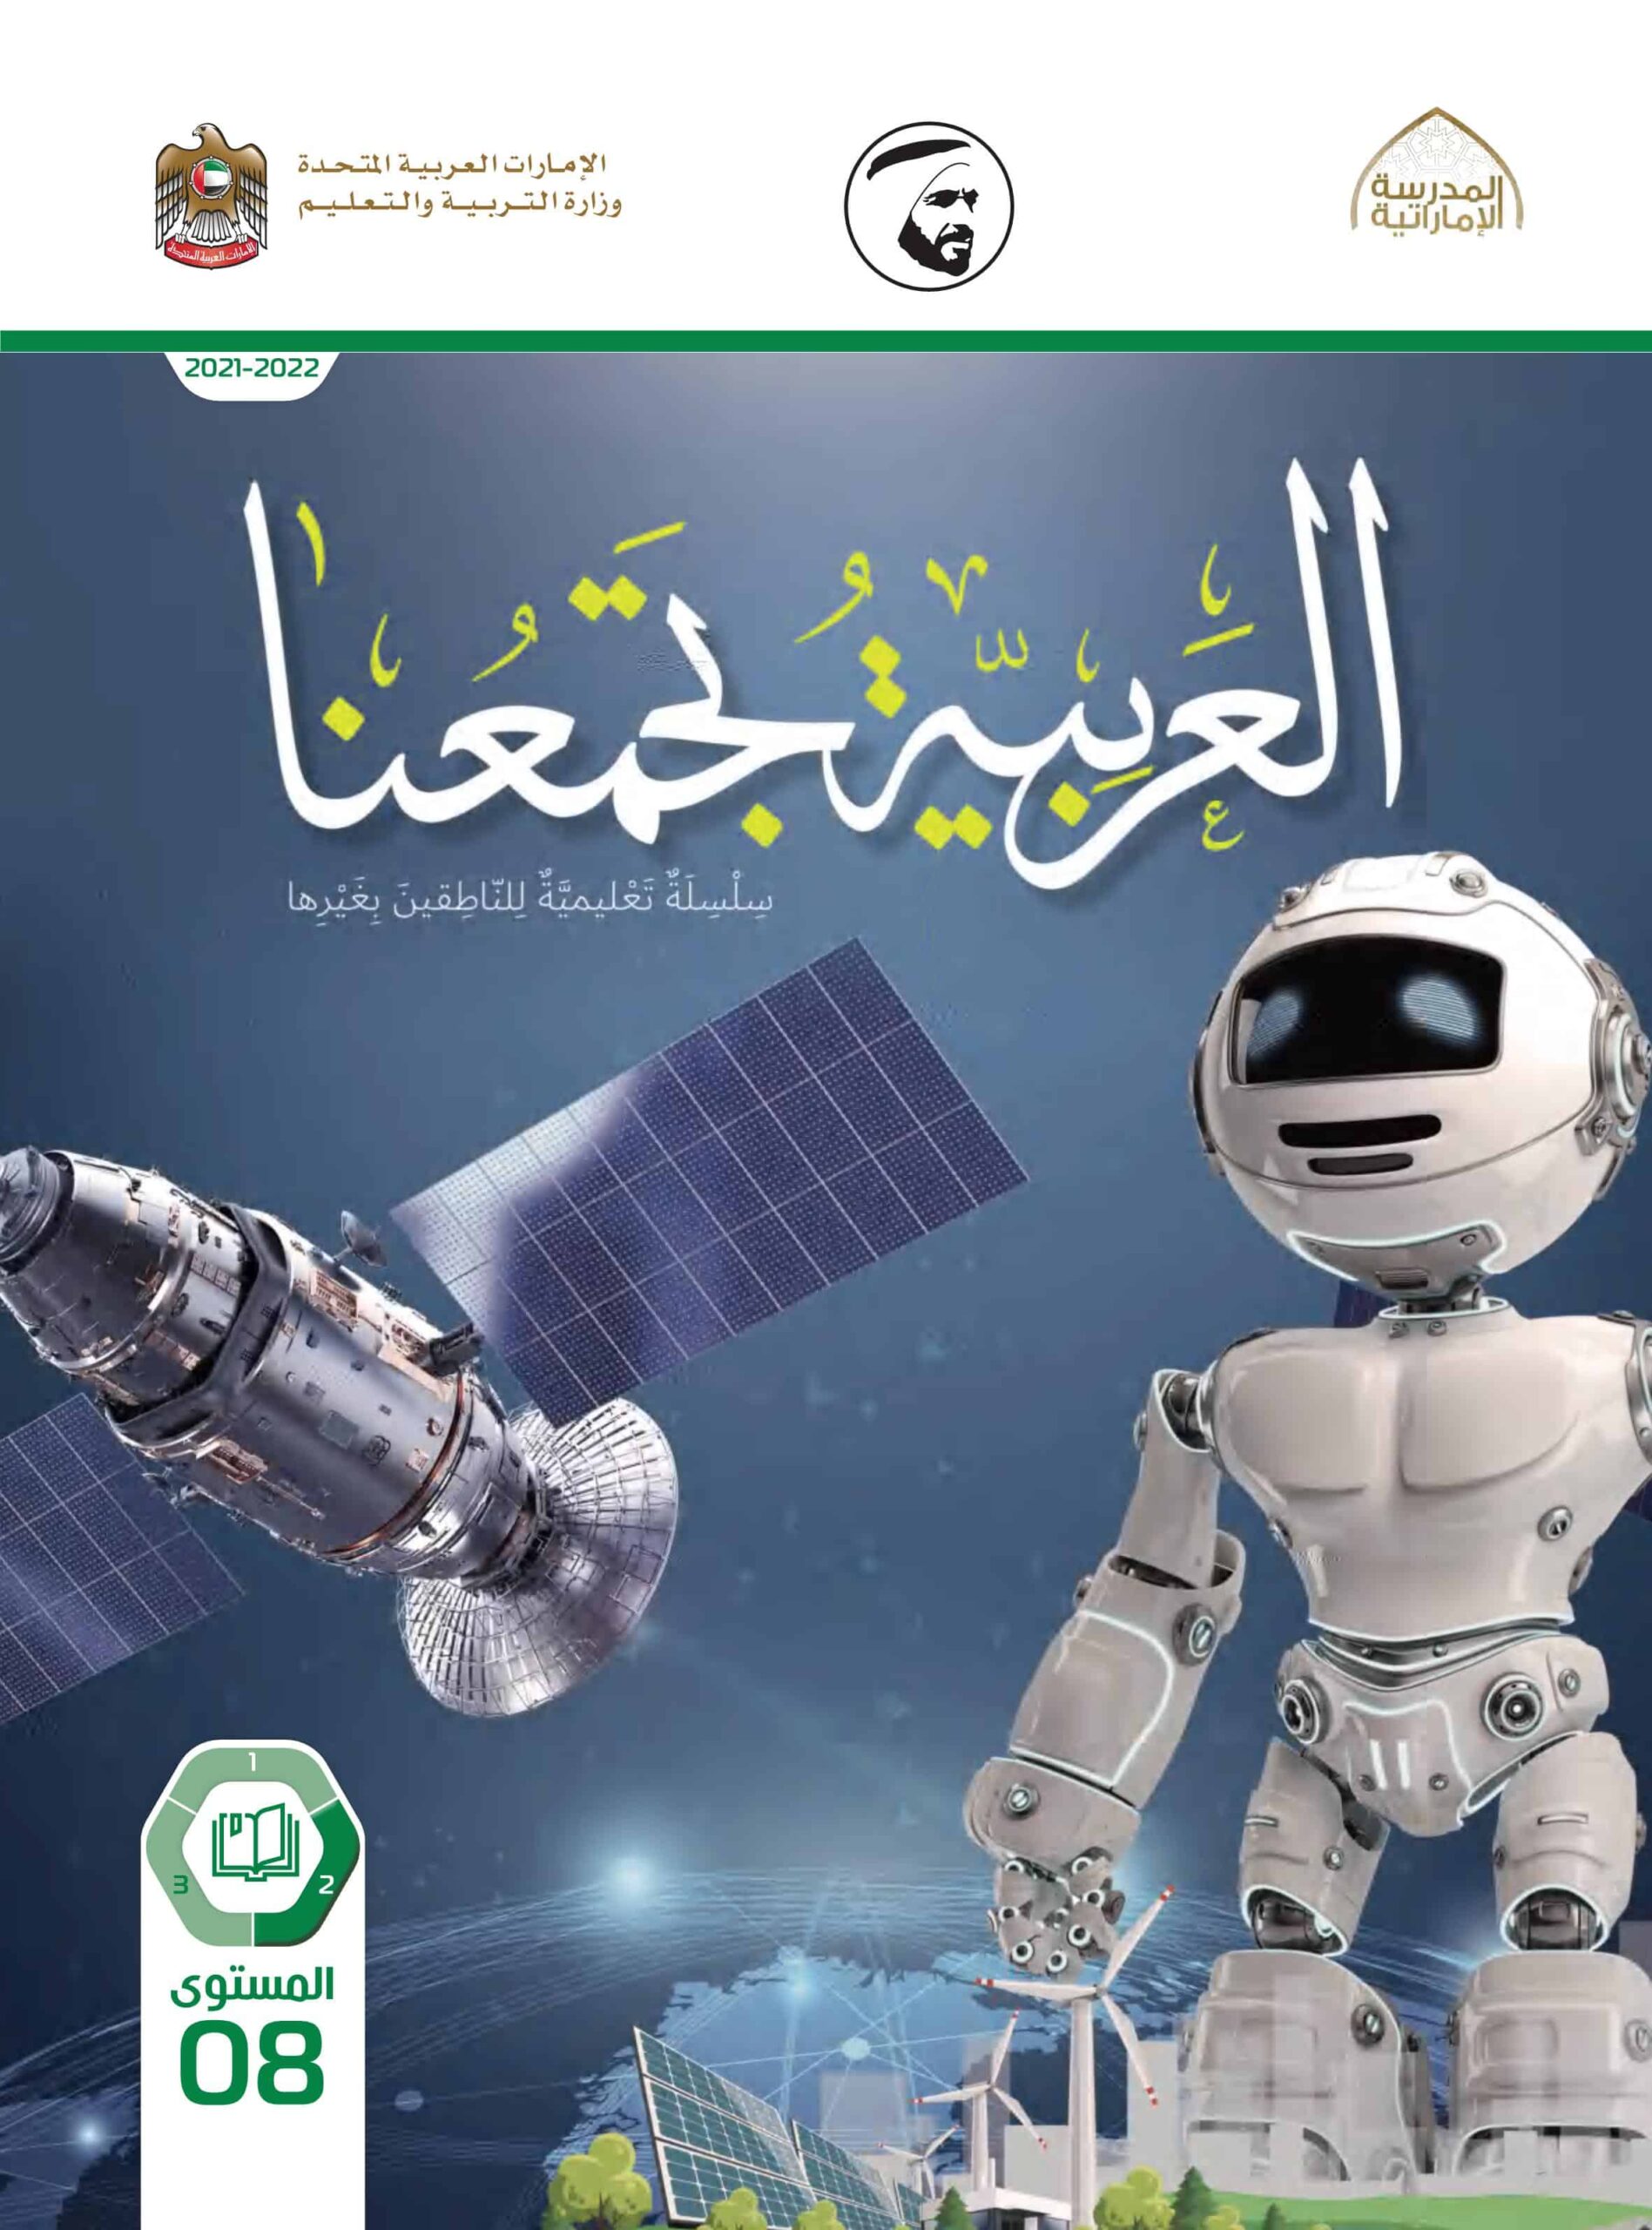 كتاب الطالب لغير الناطقين بها اللغة العربية الصف الثامن الفصل الدراسي الثاني 2021-2022